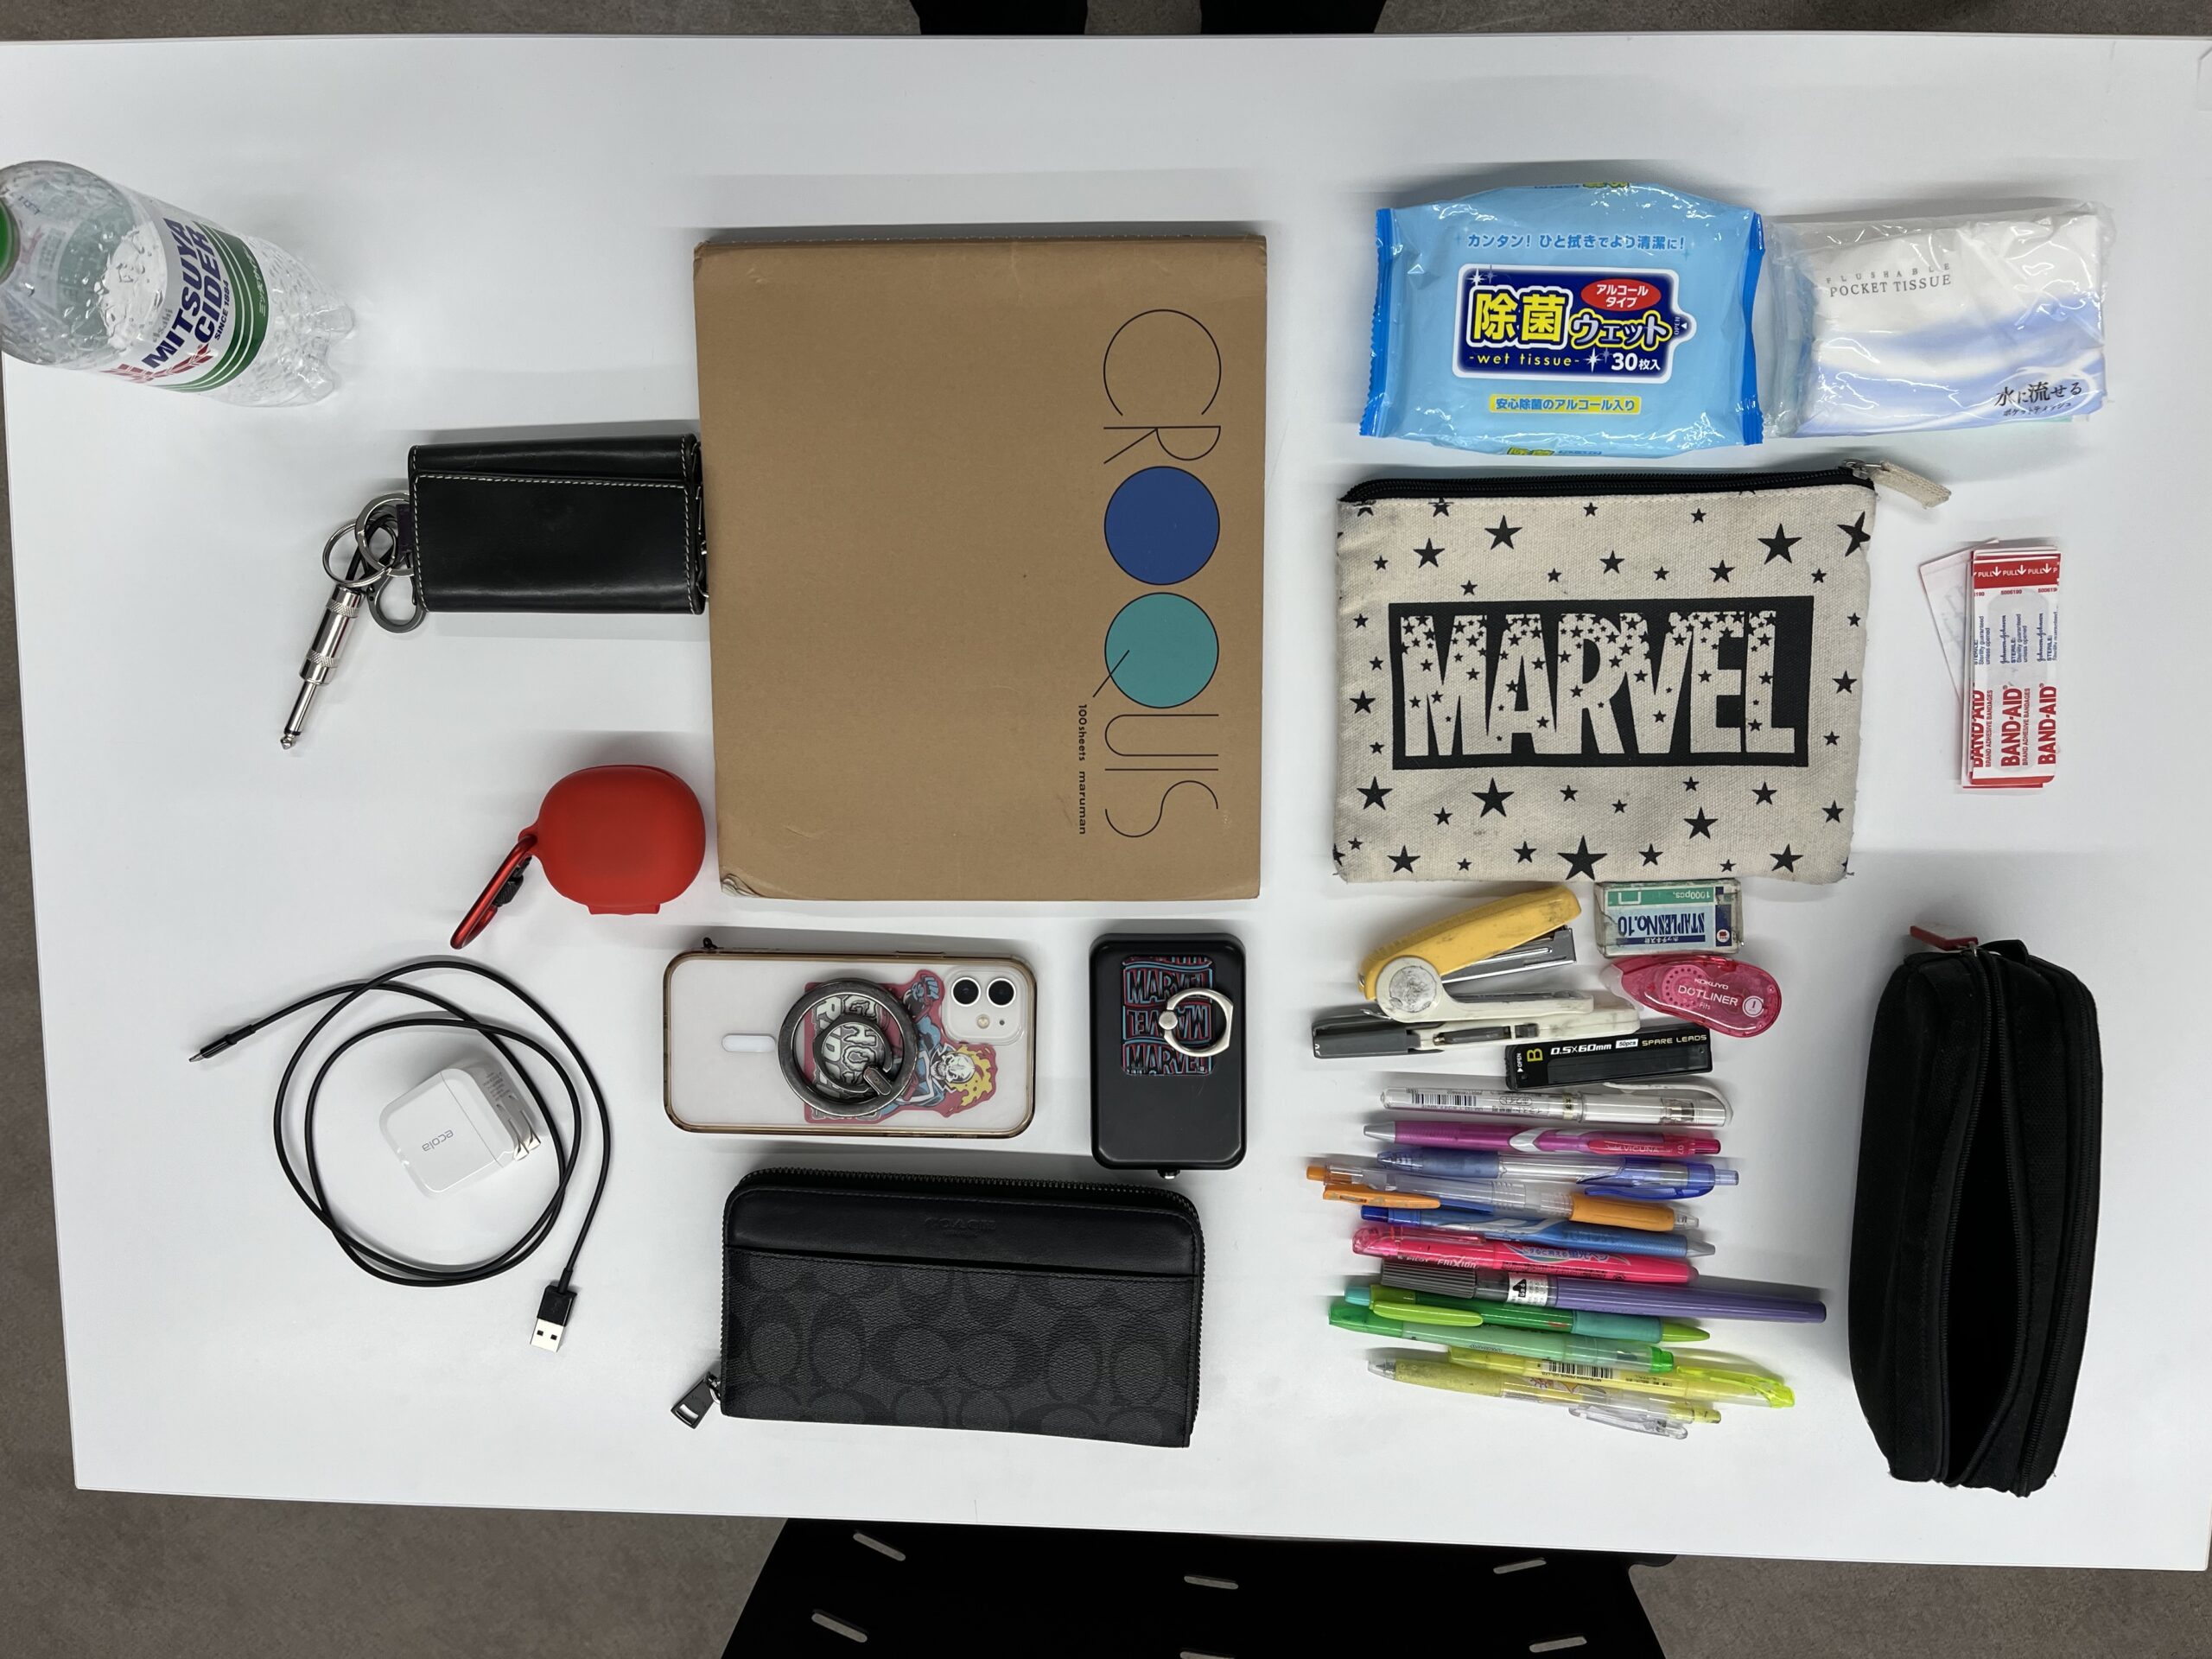 この生徒のバッグの中身は、クロッキー帳、蛍光ペン、ばんそこう、ウエットティッシュ、ワイヤレスイヤホン、スマホ、ジュース、ティッシュ、カギ、筆箱など。